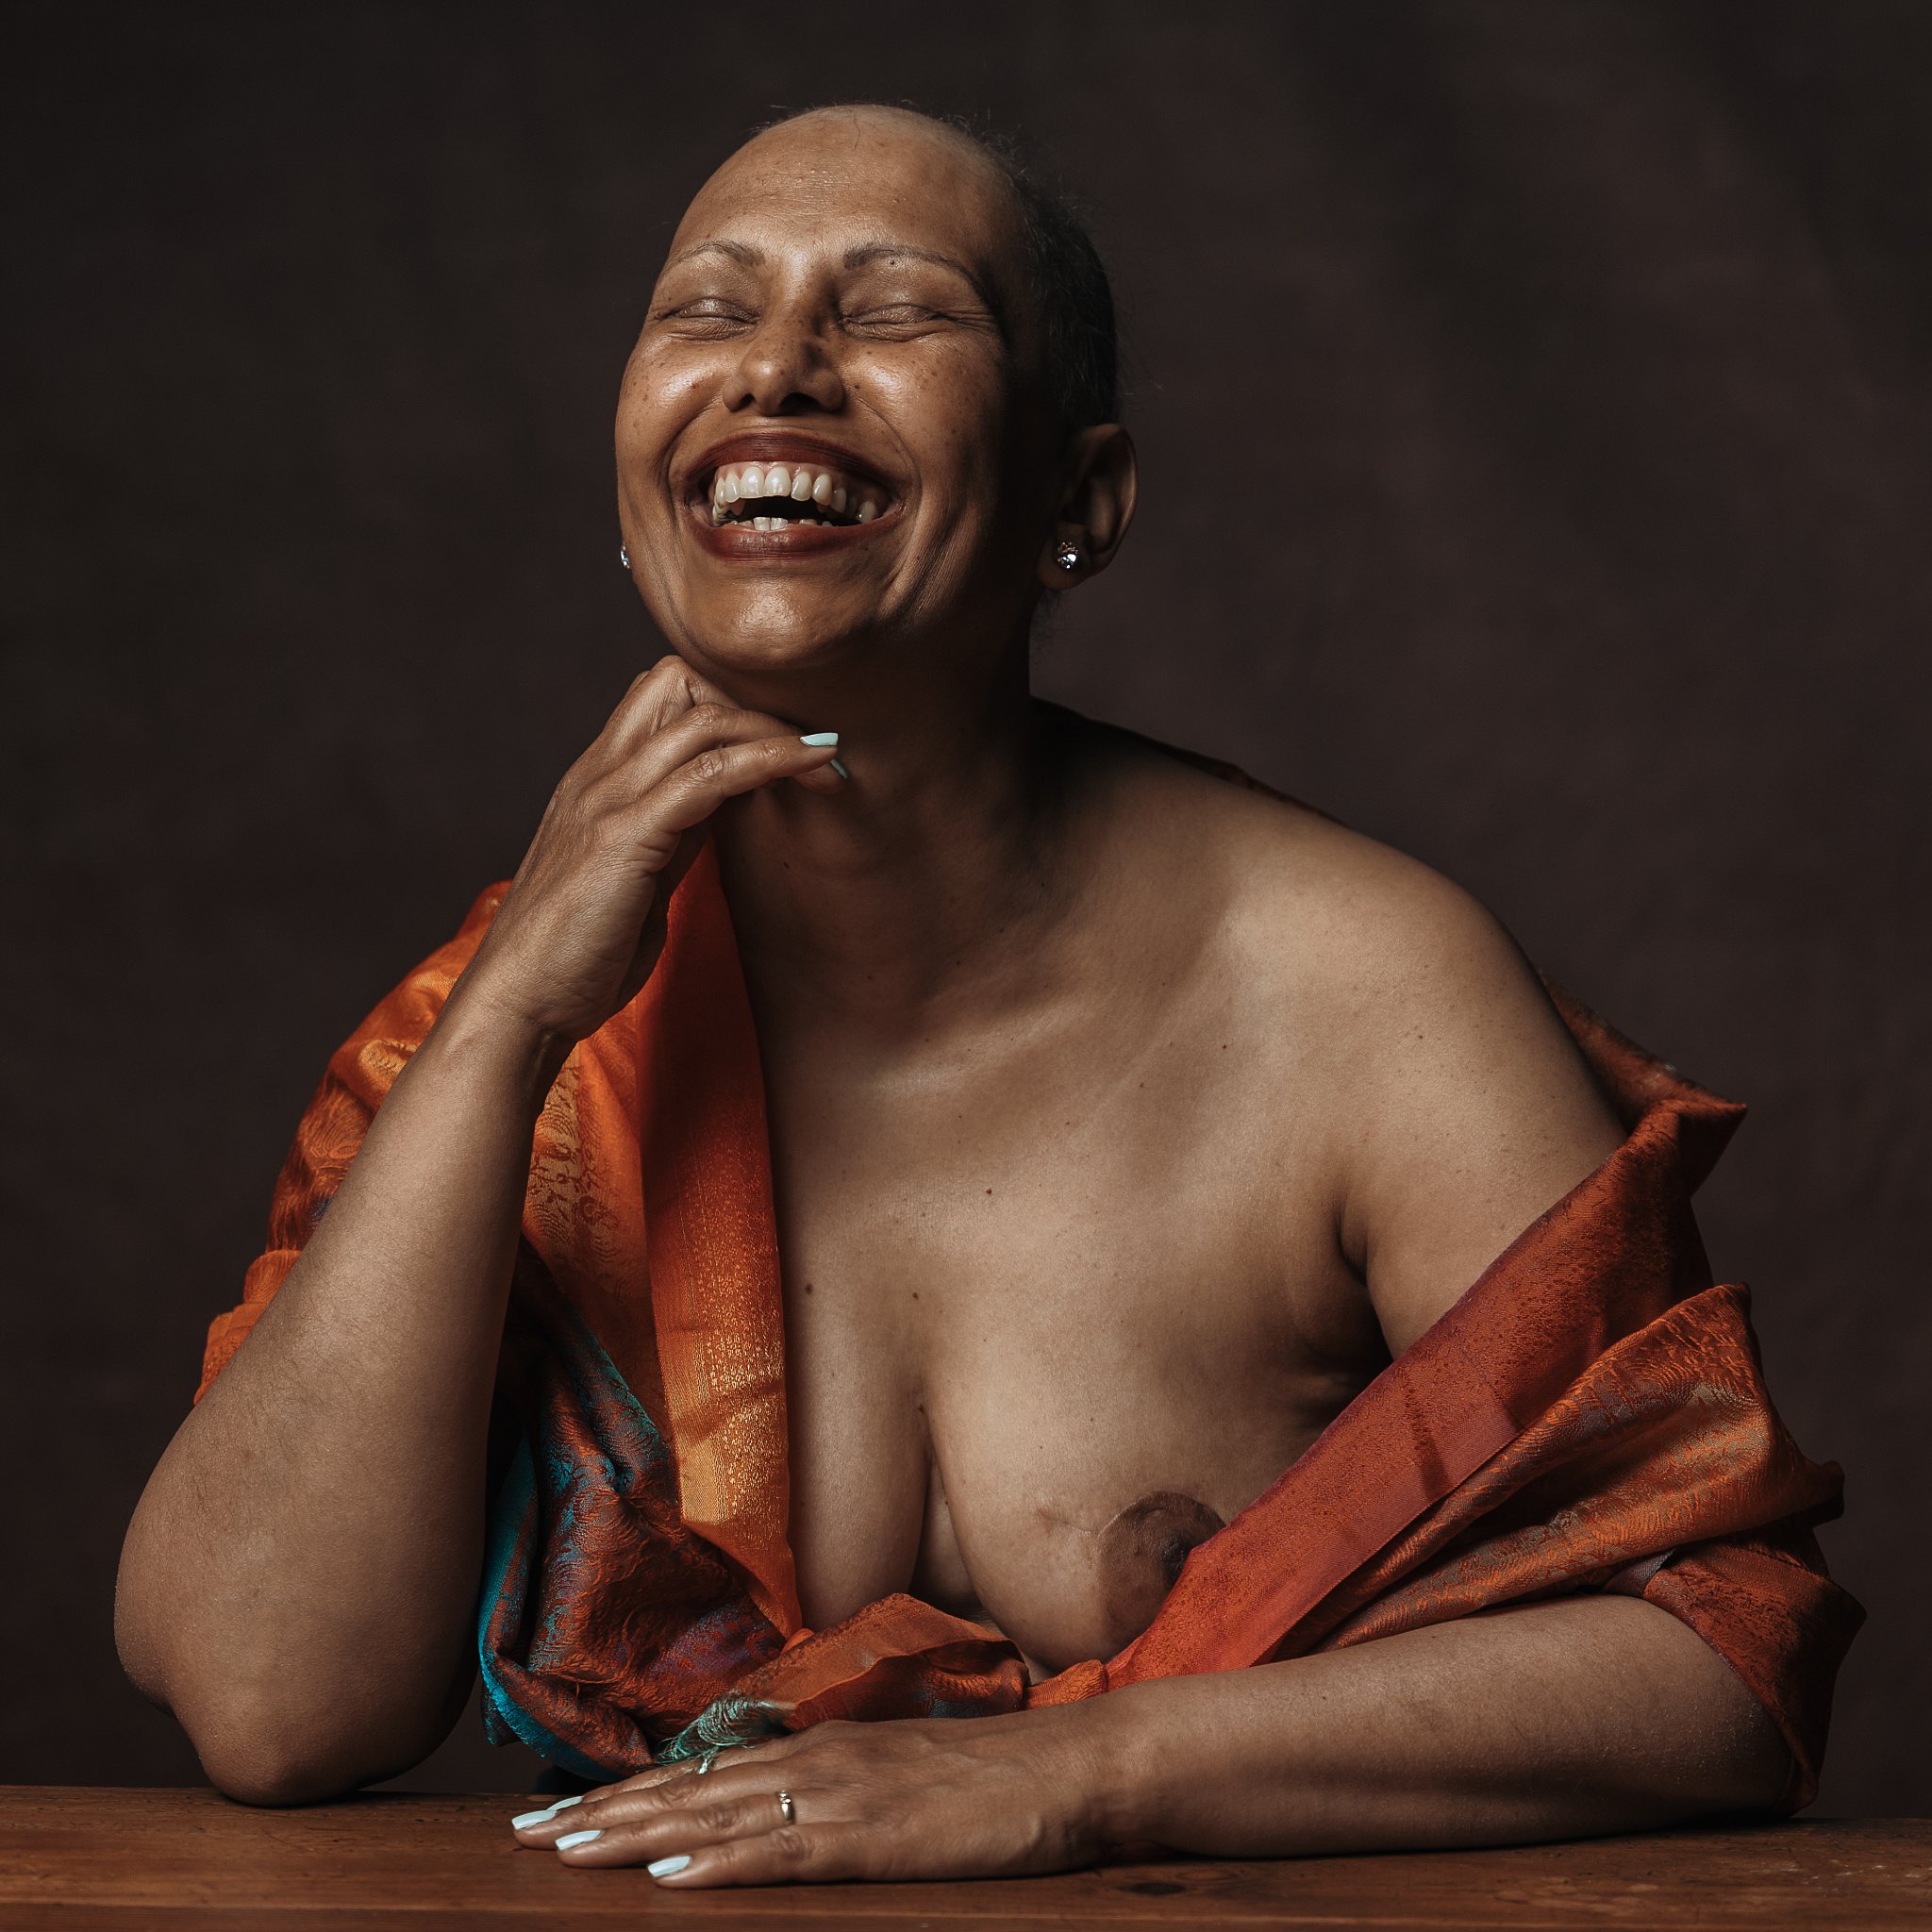 une femme appuyé sur la table, elle rit, une femme qpose en s'amusant, seance photo pour lutter contre le cancer du sein